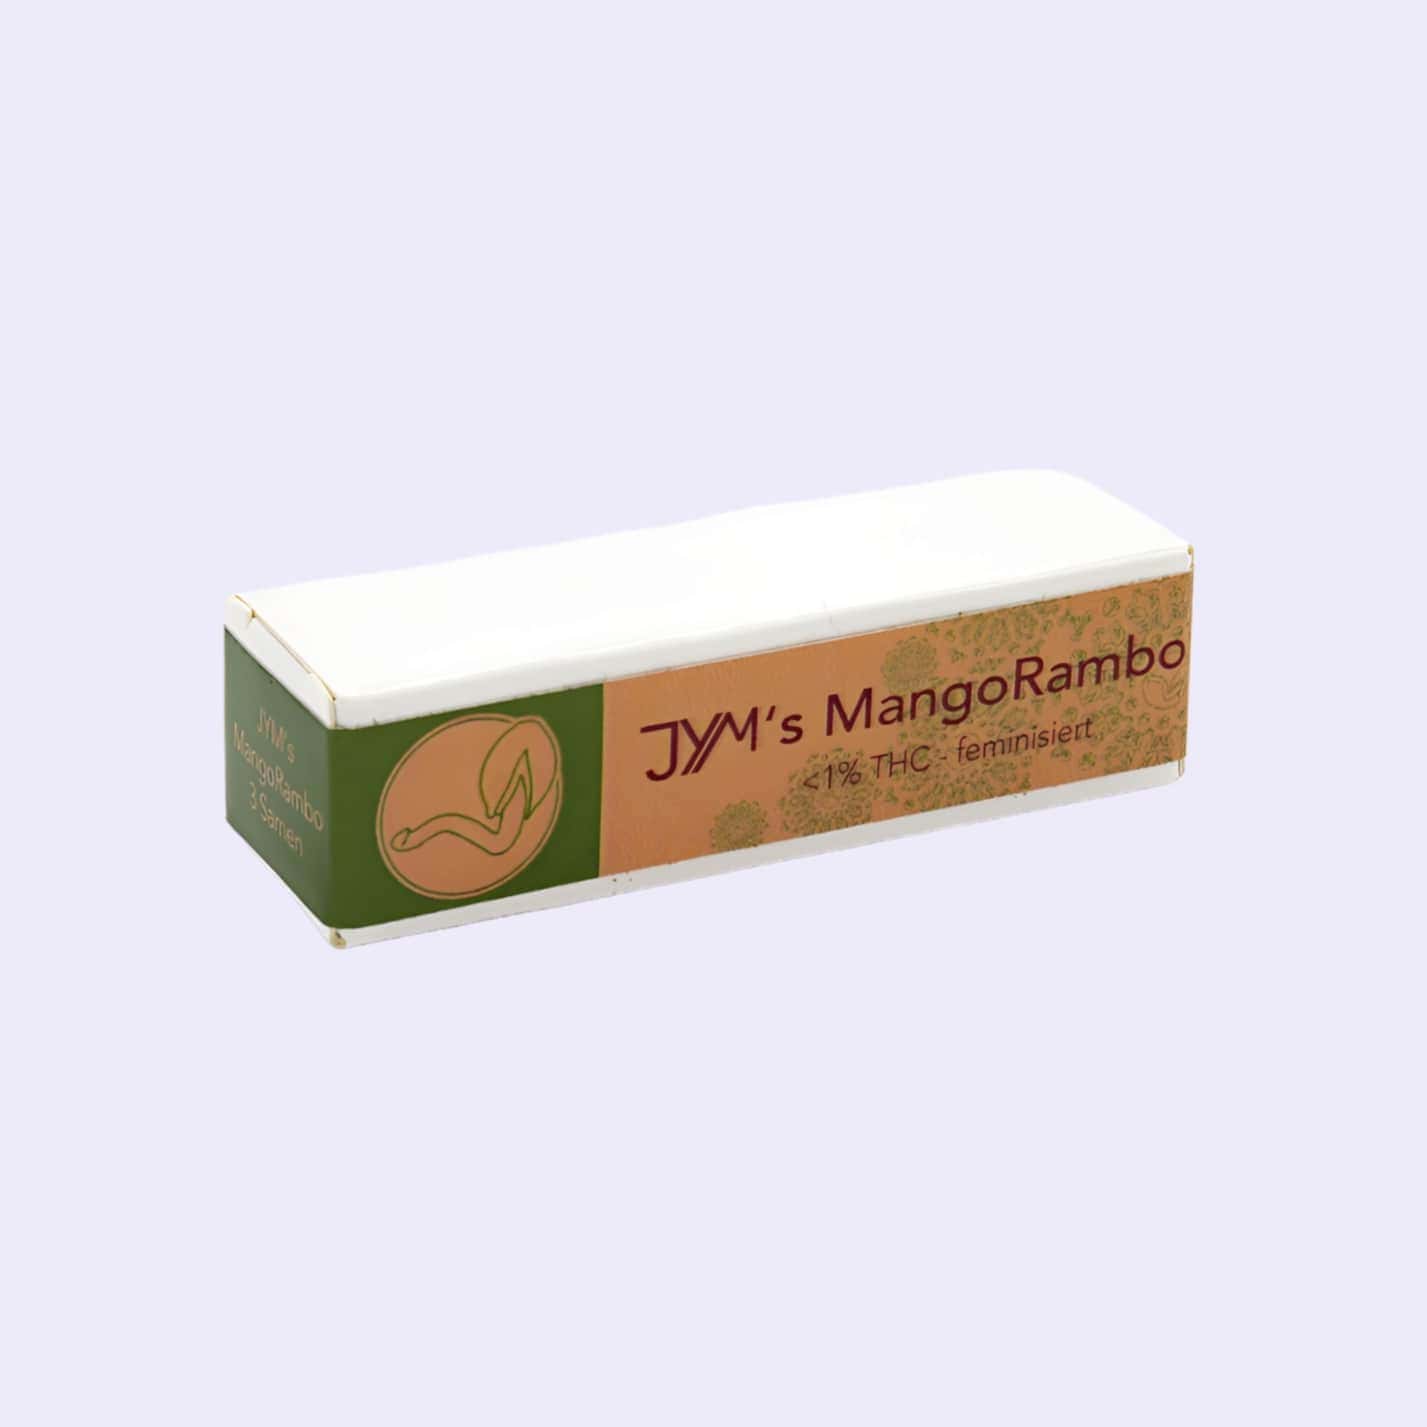 Dieses Bild zeigt die CBD Hanfsamen Mango Rambo CBD Seeds 3pcs von der Firma JYM's